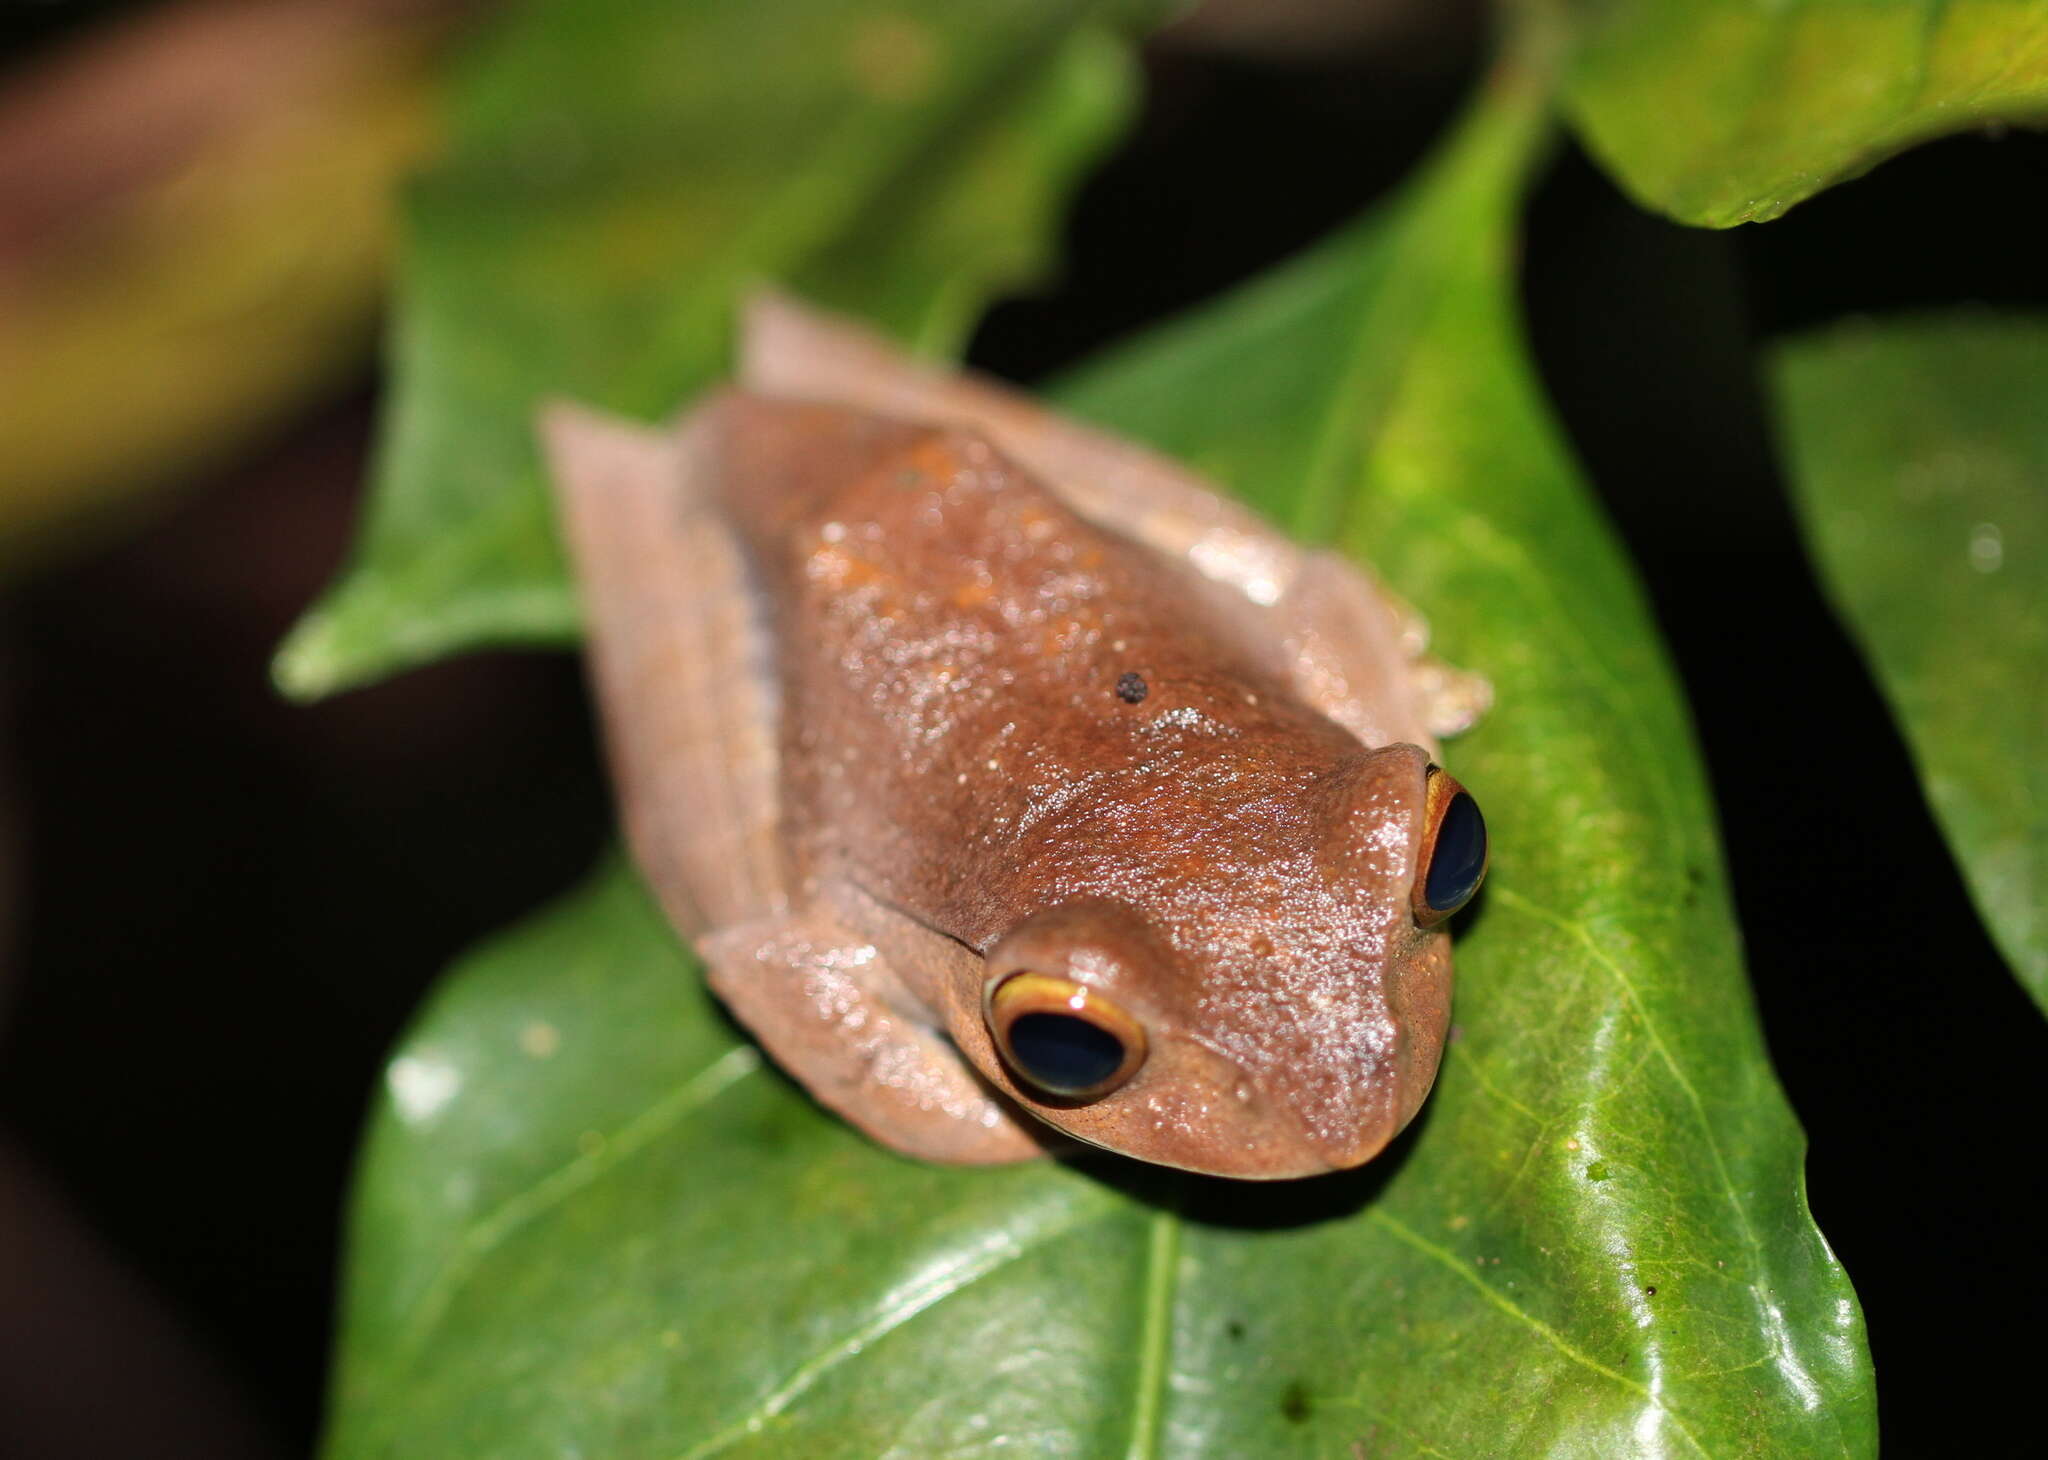 Image of Madagascar Bright-eyed Frog